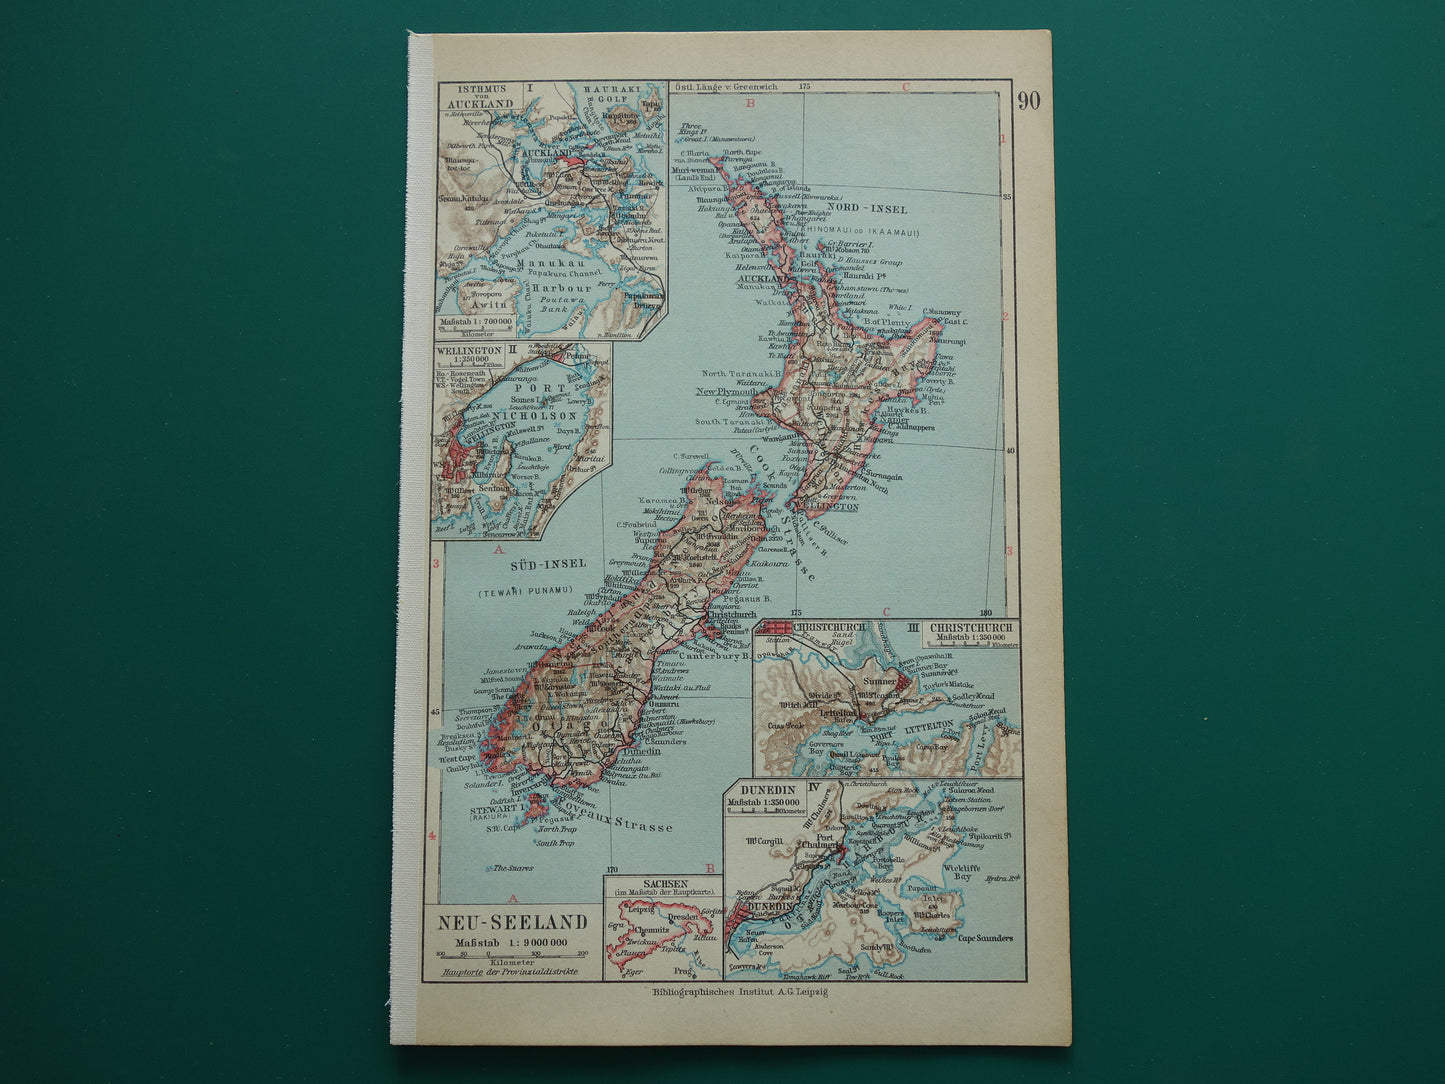 Oude landkaart van Nieuw-Zeeland uit 1931 originele vintage kaart Nieuw-Zeeland Dunedin Christchurch Auckland Wellington - antieke landkaarten